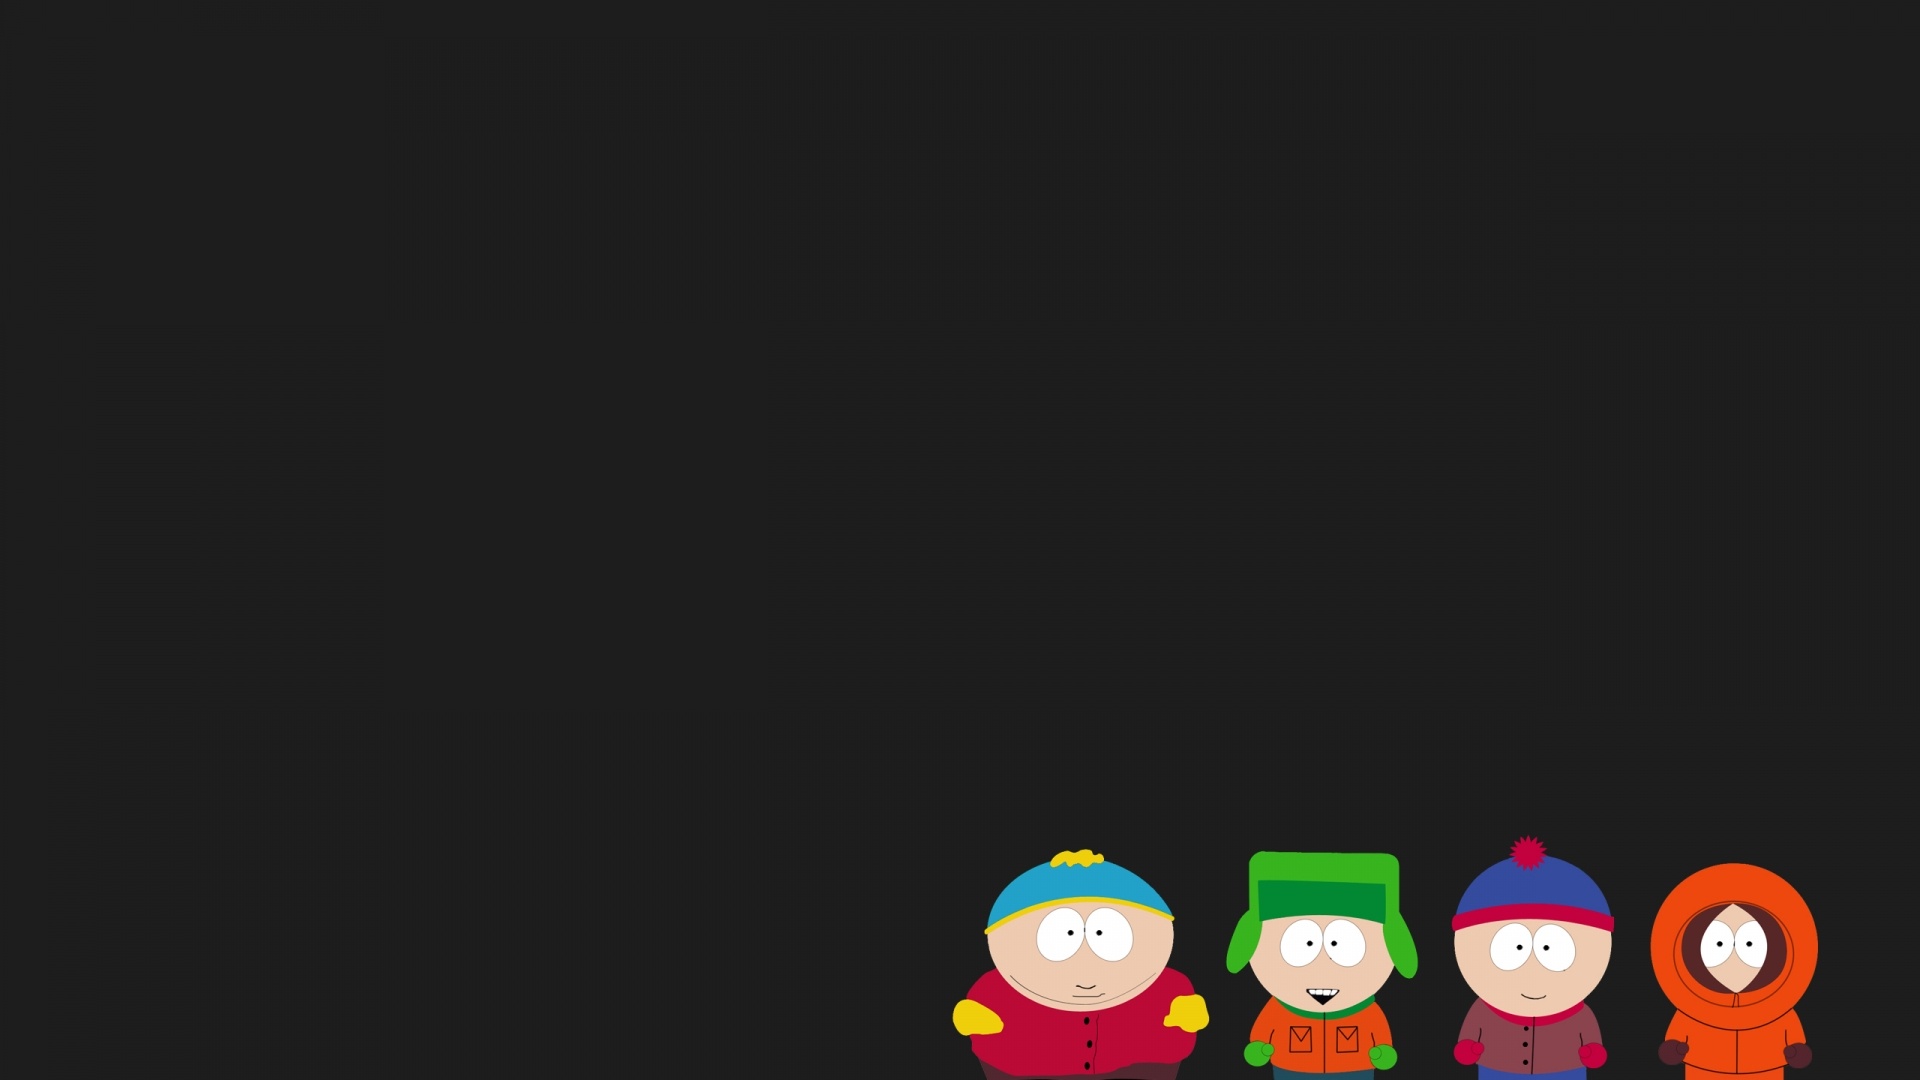 South Park 1080p wallpaper